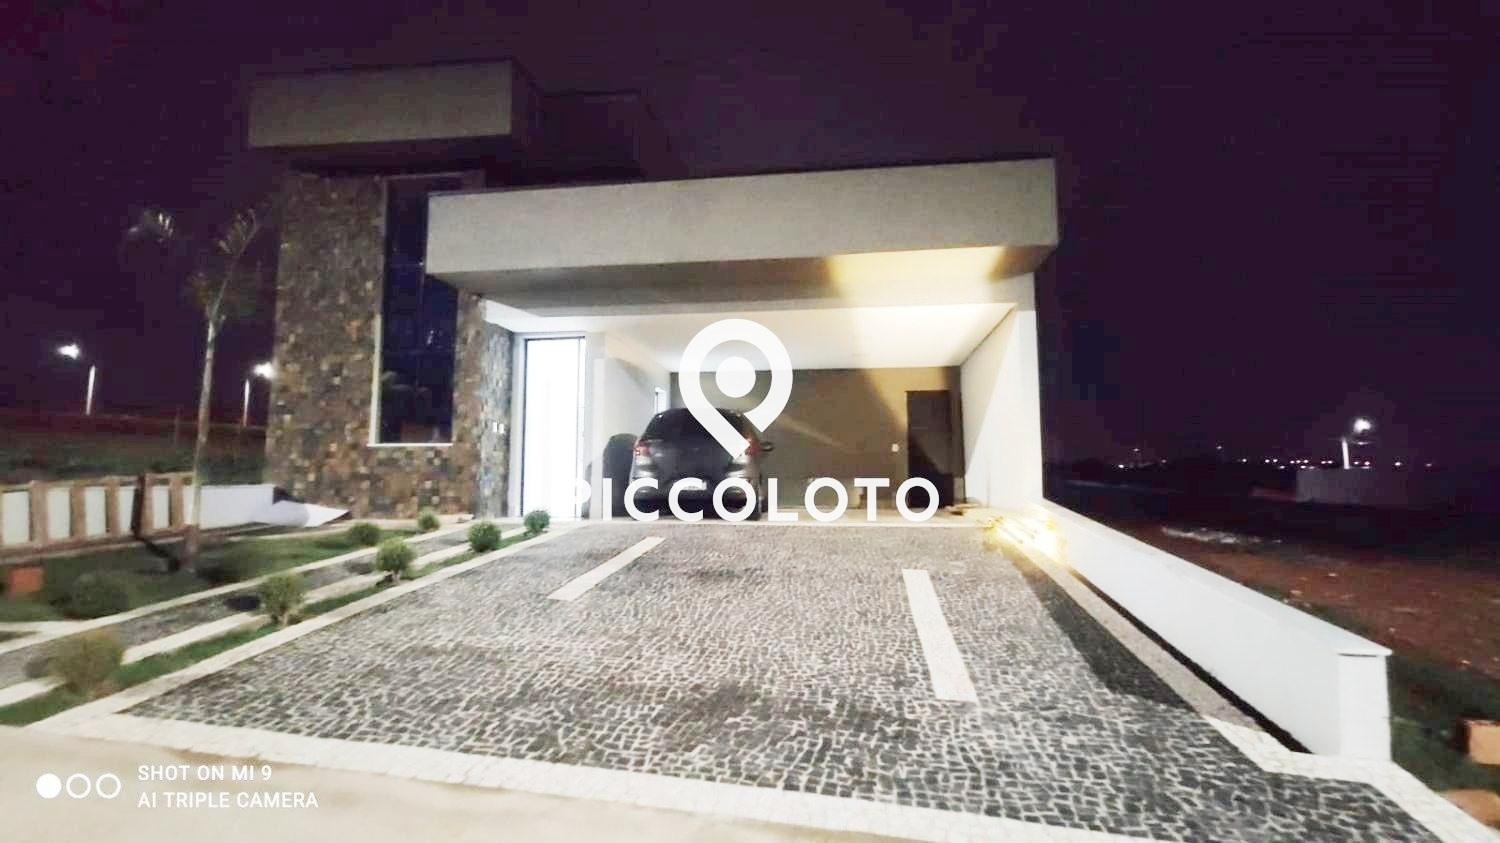 Piccoloto -Casa à venda no Jardim Recanto das Águas em Nova Odessa